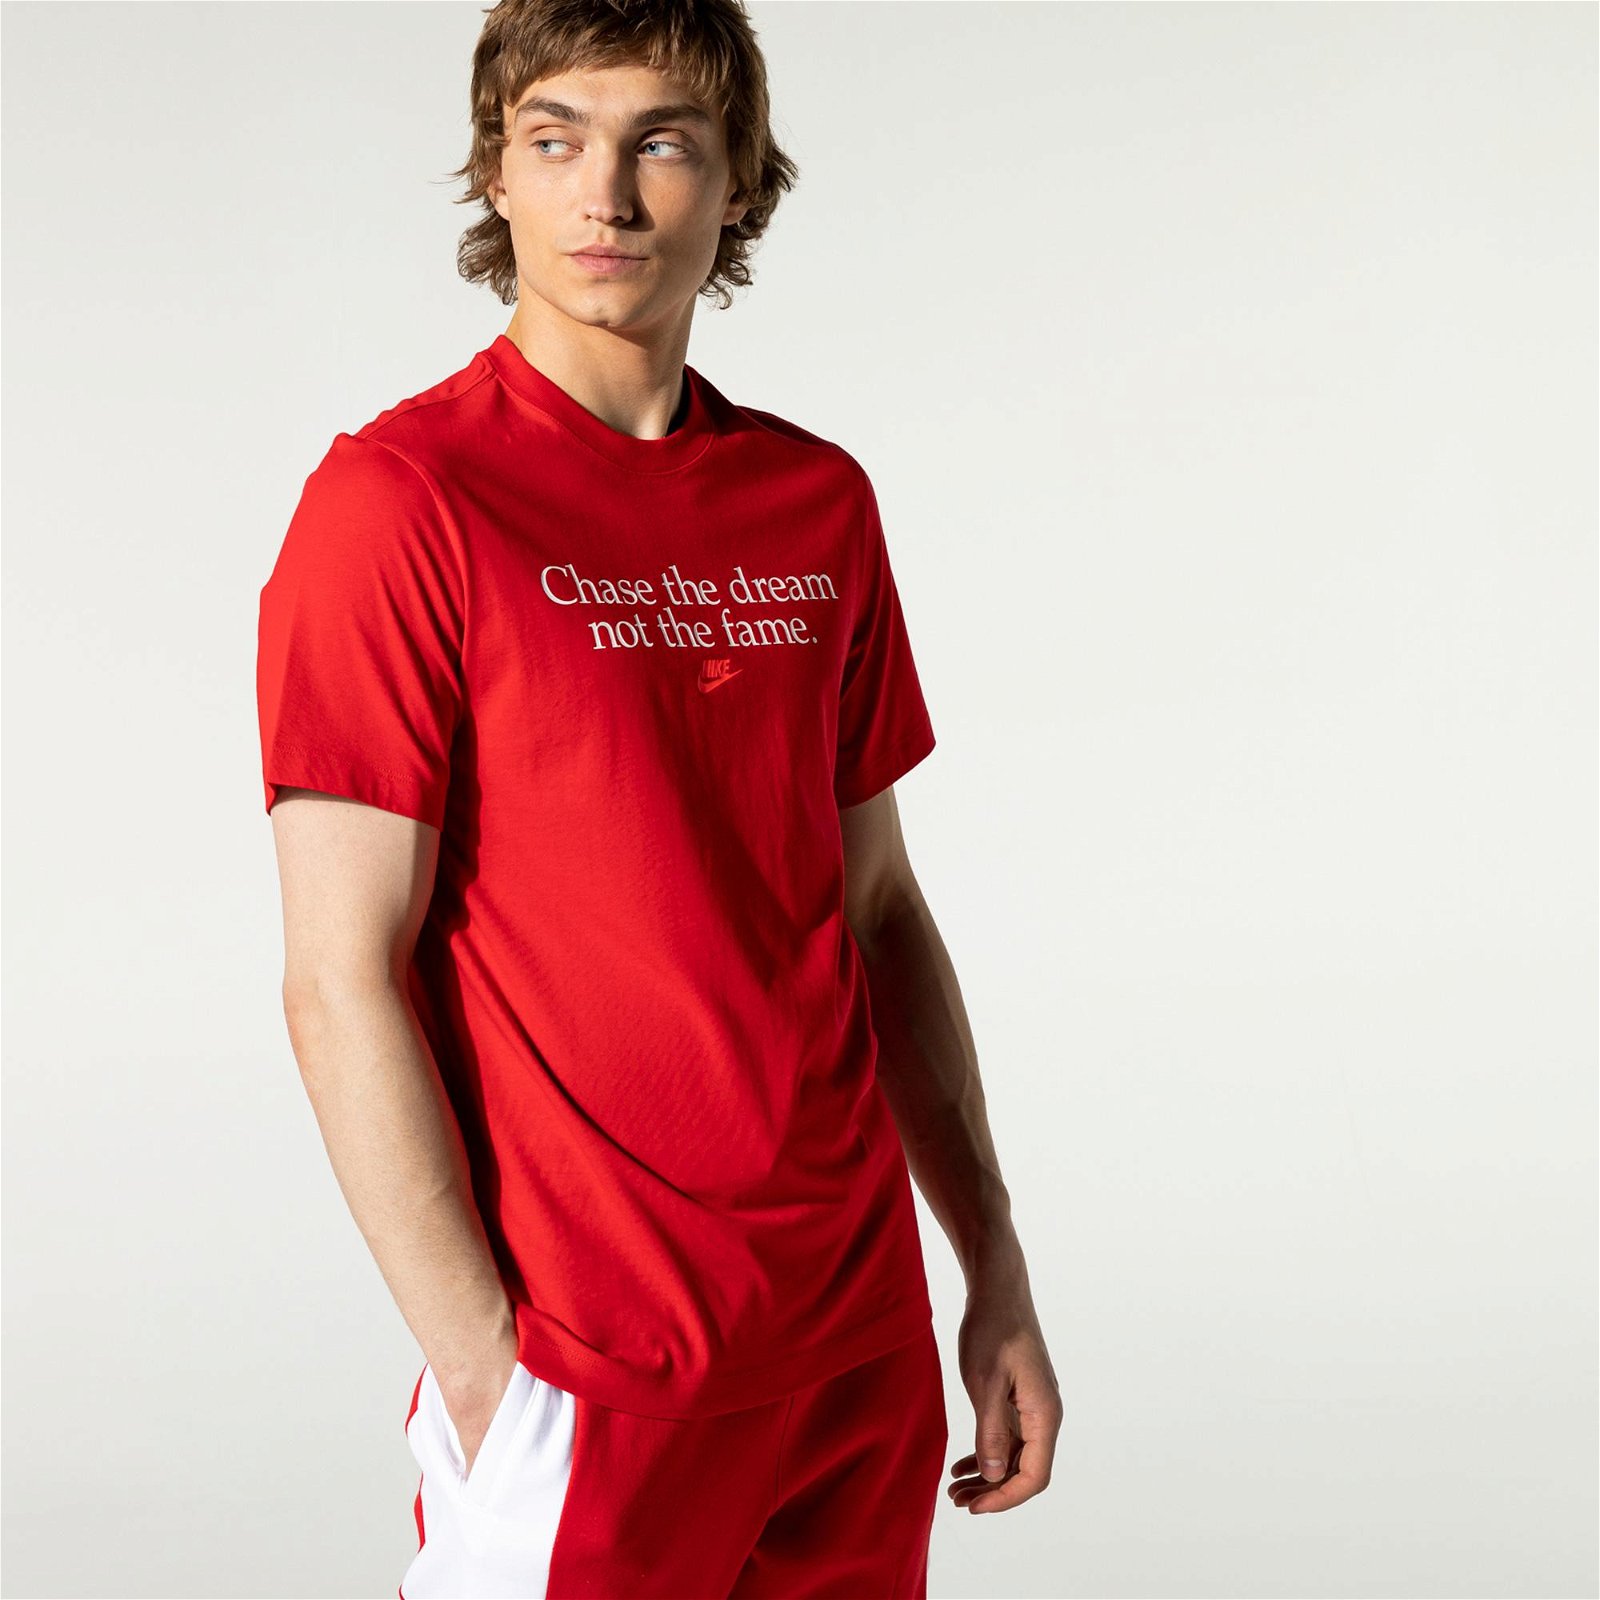 Nike Sportswear Chase Dreams Erkek Kırmızı T-Shirt